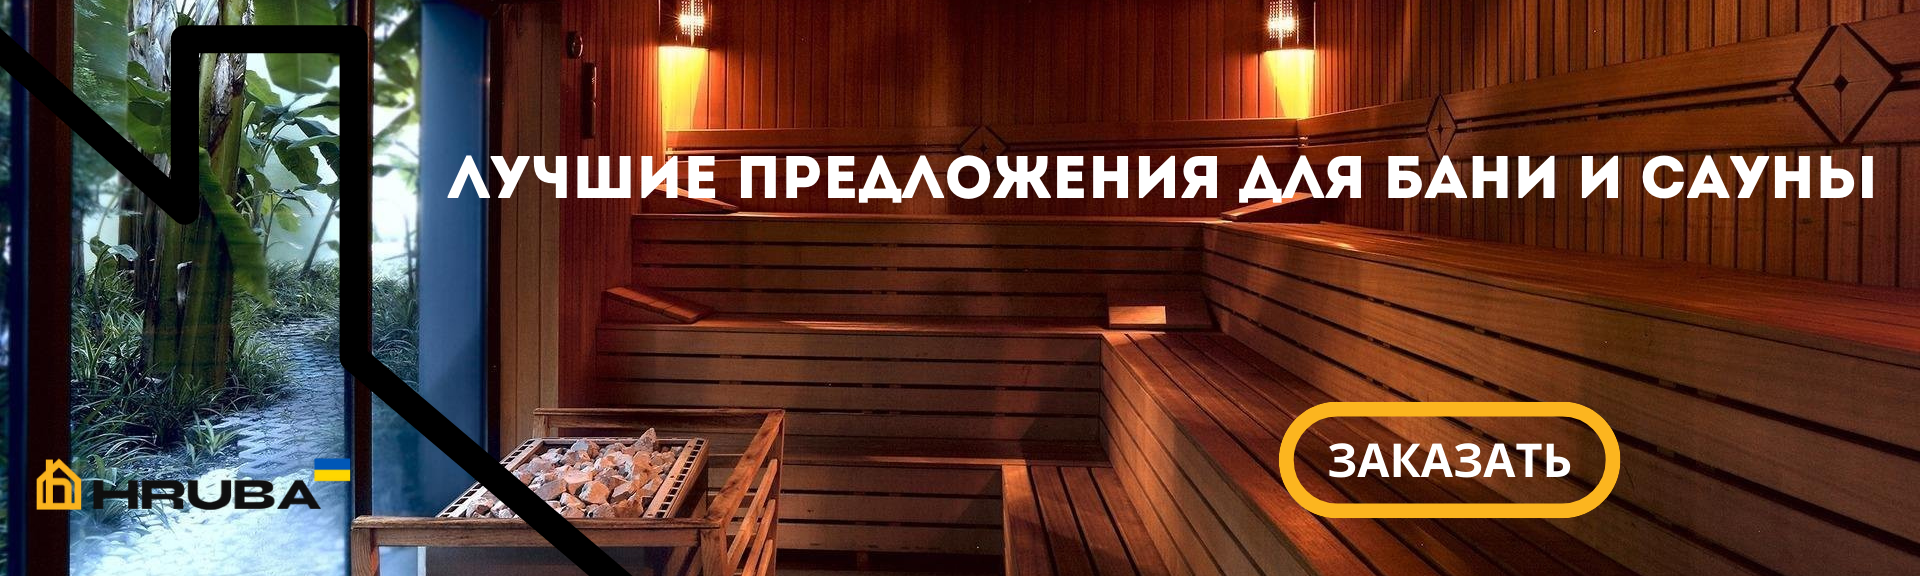 Лучшие предложения на бани и сауны купить в Киеве по выгодной цене (073) 35 35 487 | HRUBA